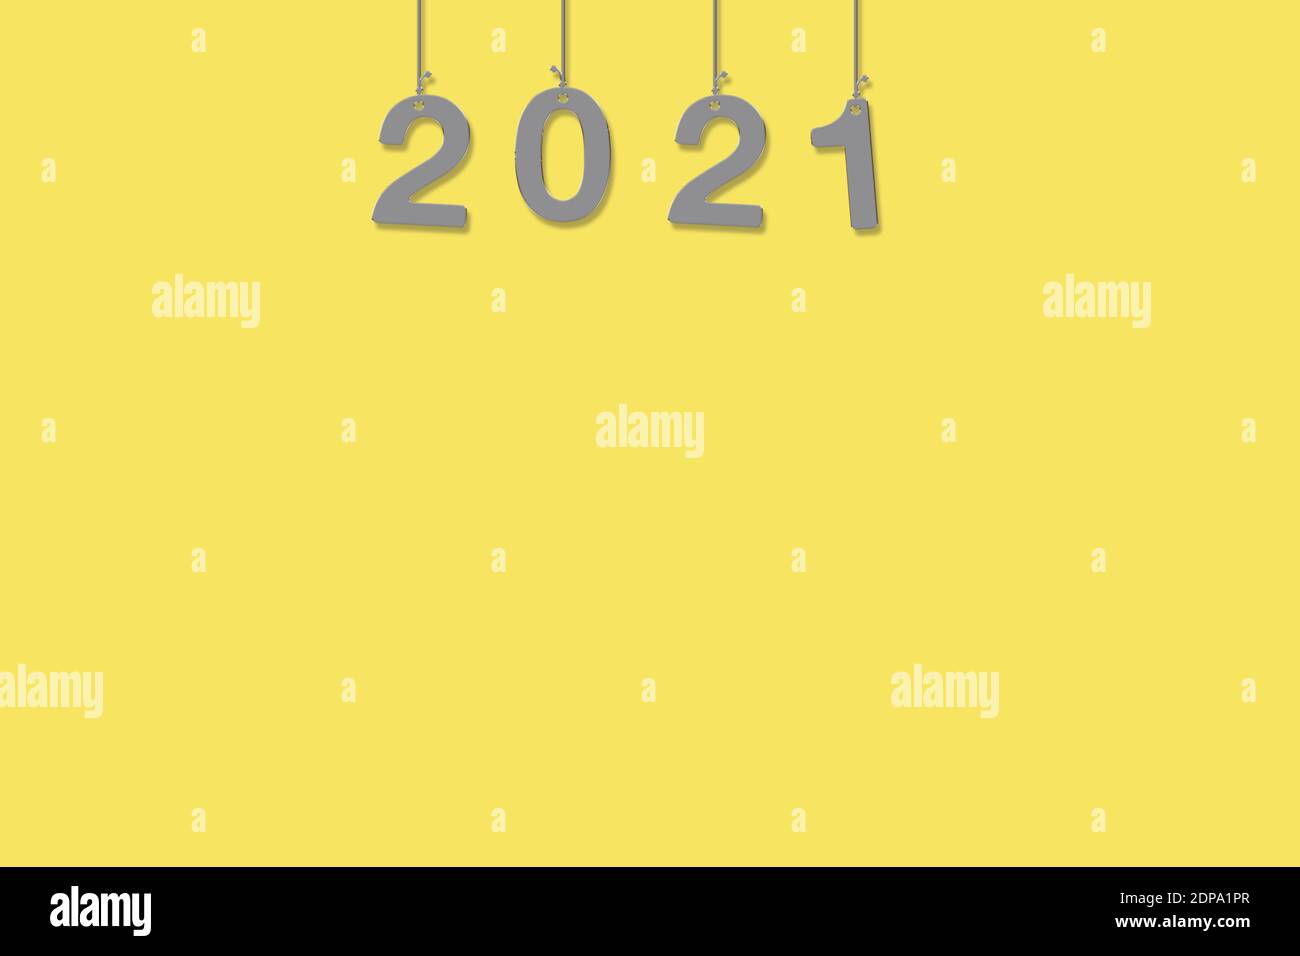 Leere Abbildung für Ihr Design 2021. Trendfarben grau und gelb. Perfekt für Logo, Dekorationen für Werbung, Internet. Gelber Hintergrund Stockfoto